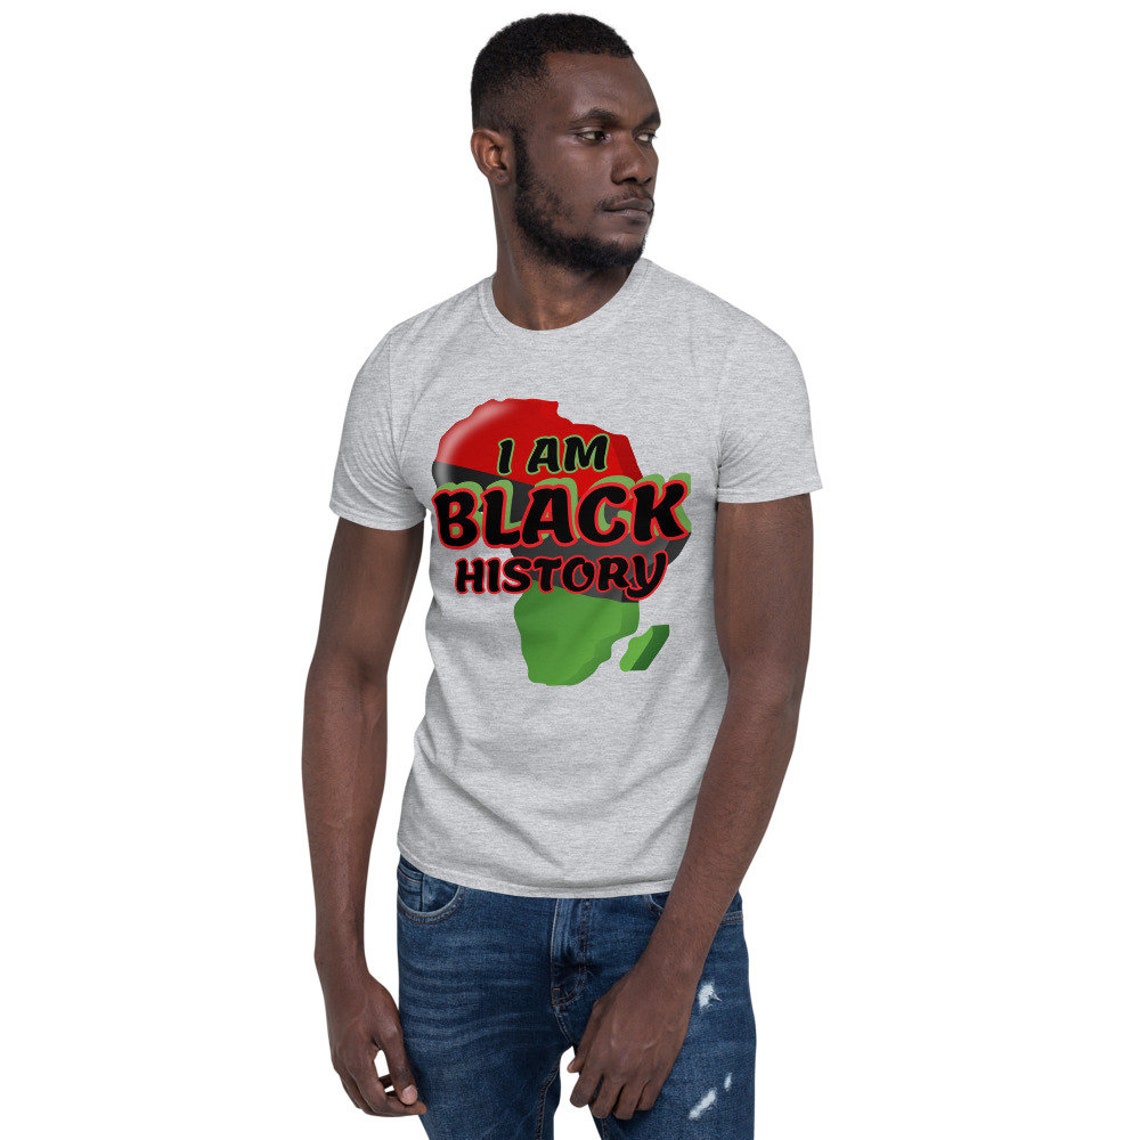 I AM Black History Shirt Short-Sleeve Unisex T-Shirt Black | Etsy